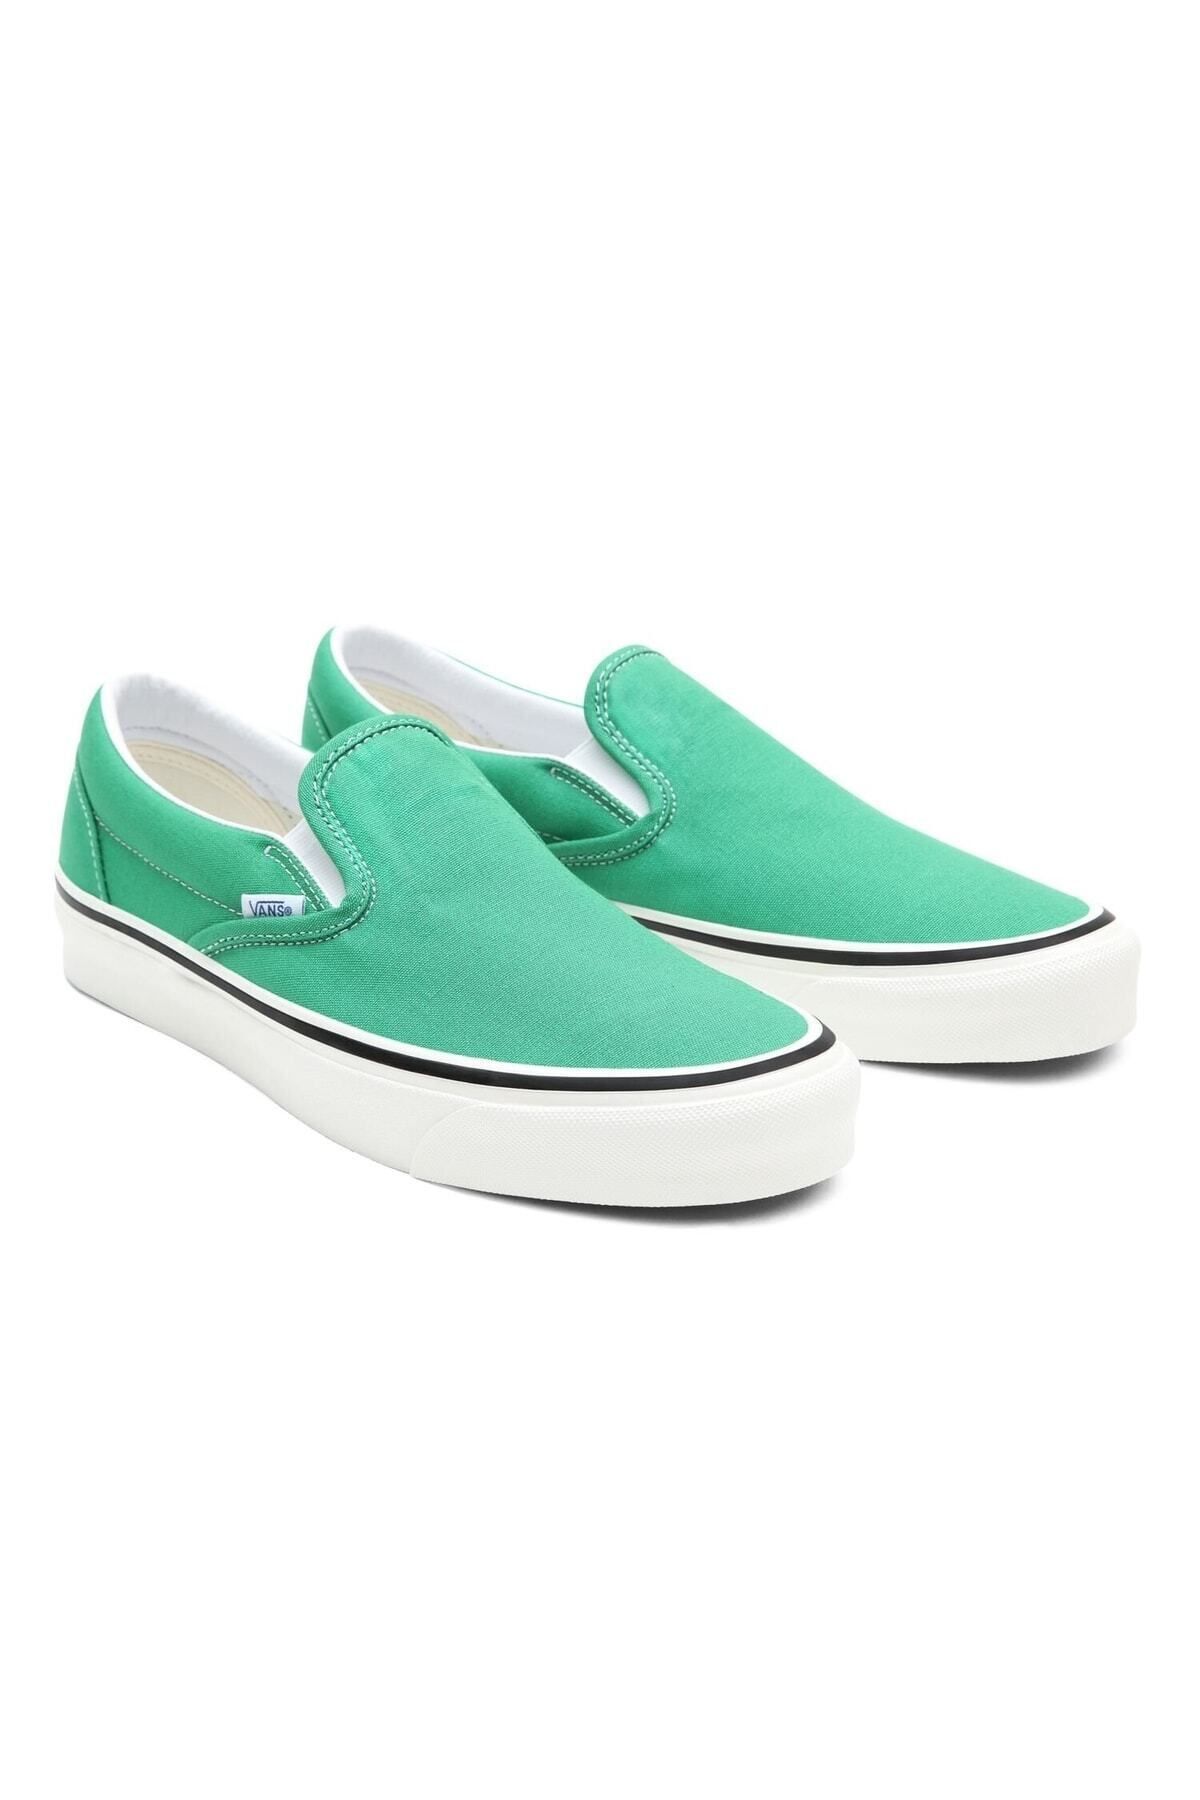 Vans Ua Classic Slip-on 98 Dx Kadın Yeşil Sneaker Ayakkabı Vn0a3jex45z1